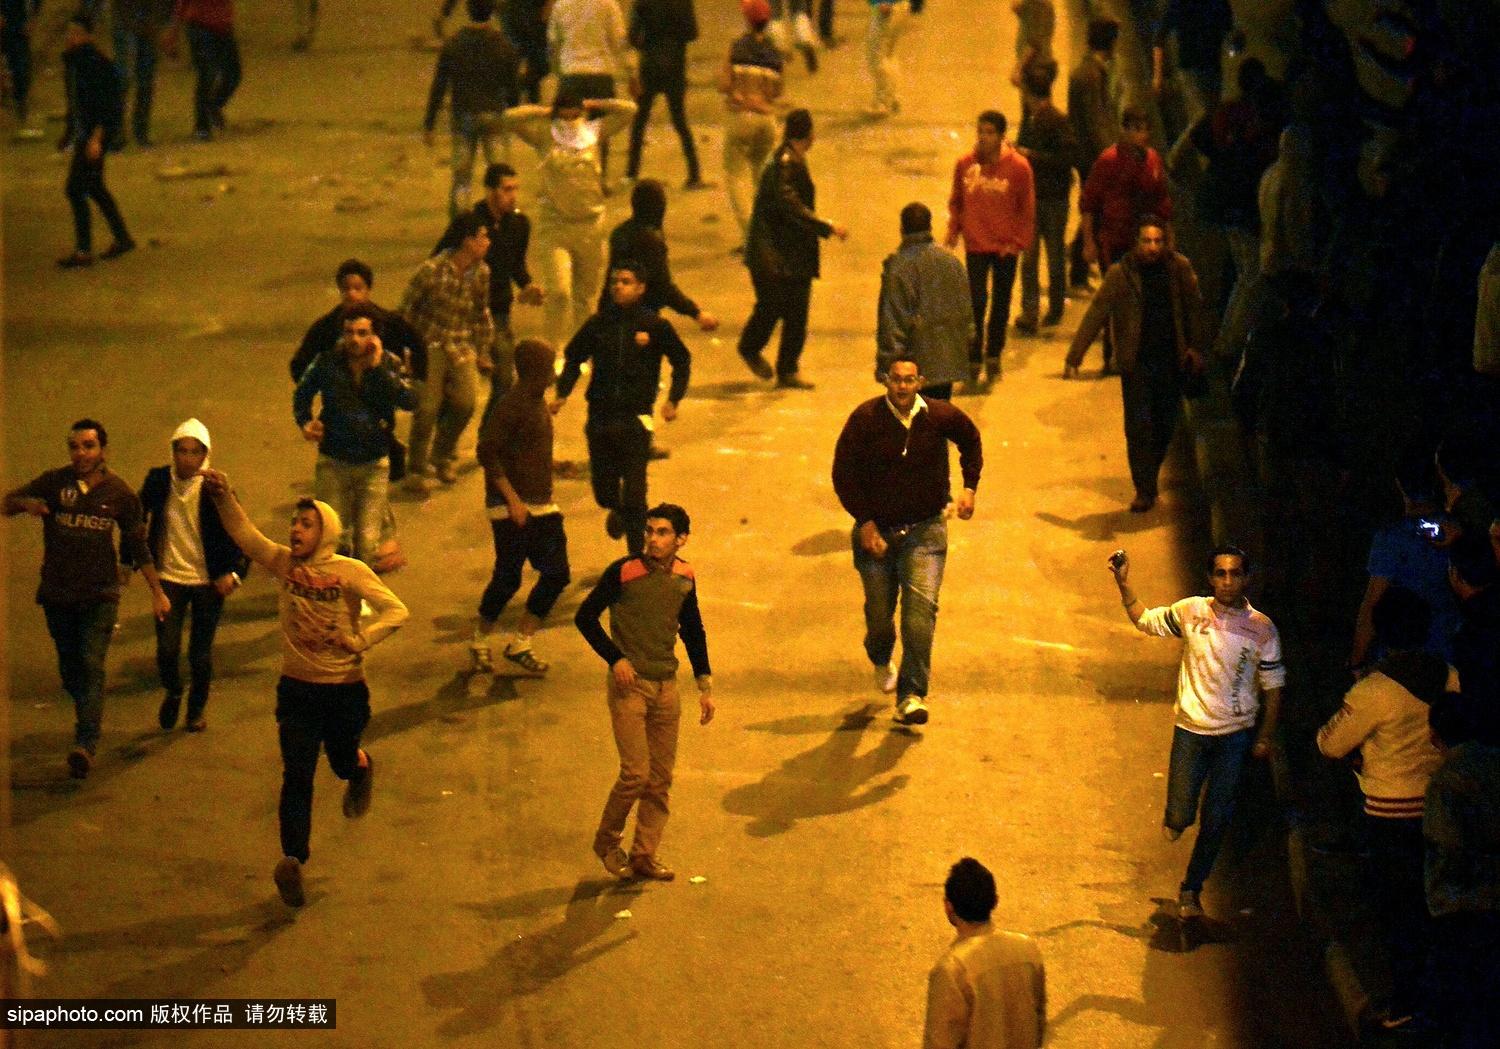 穆巴拉克被判谋杀罪不成立 引发开罗大规模骚乱